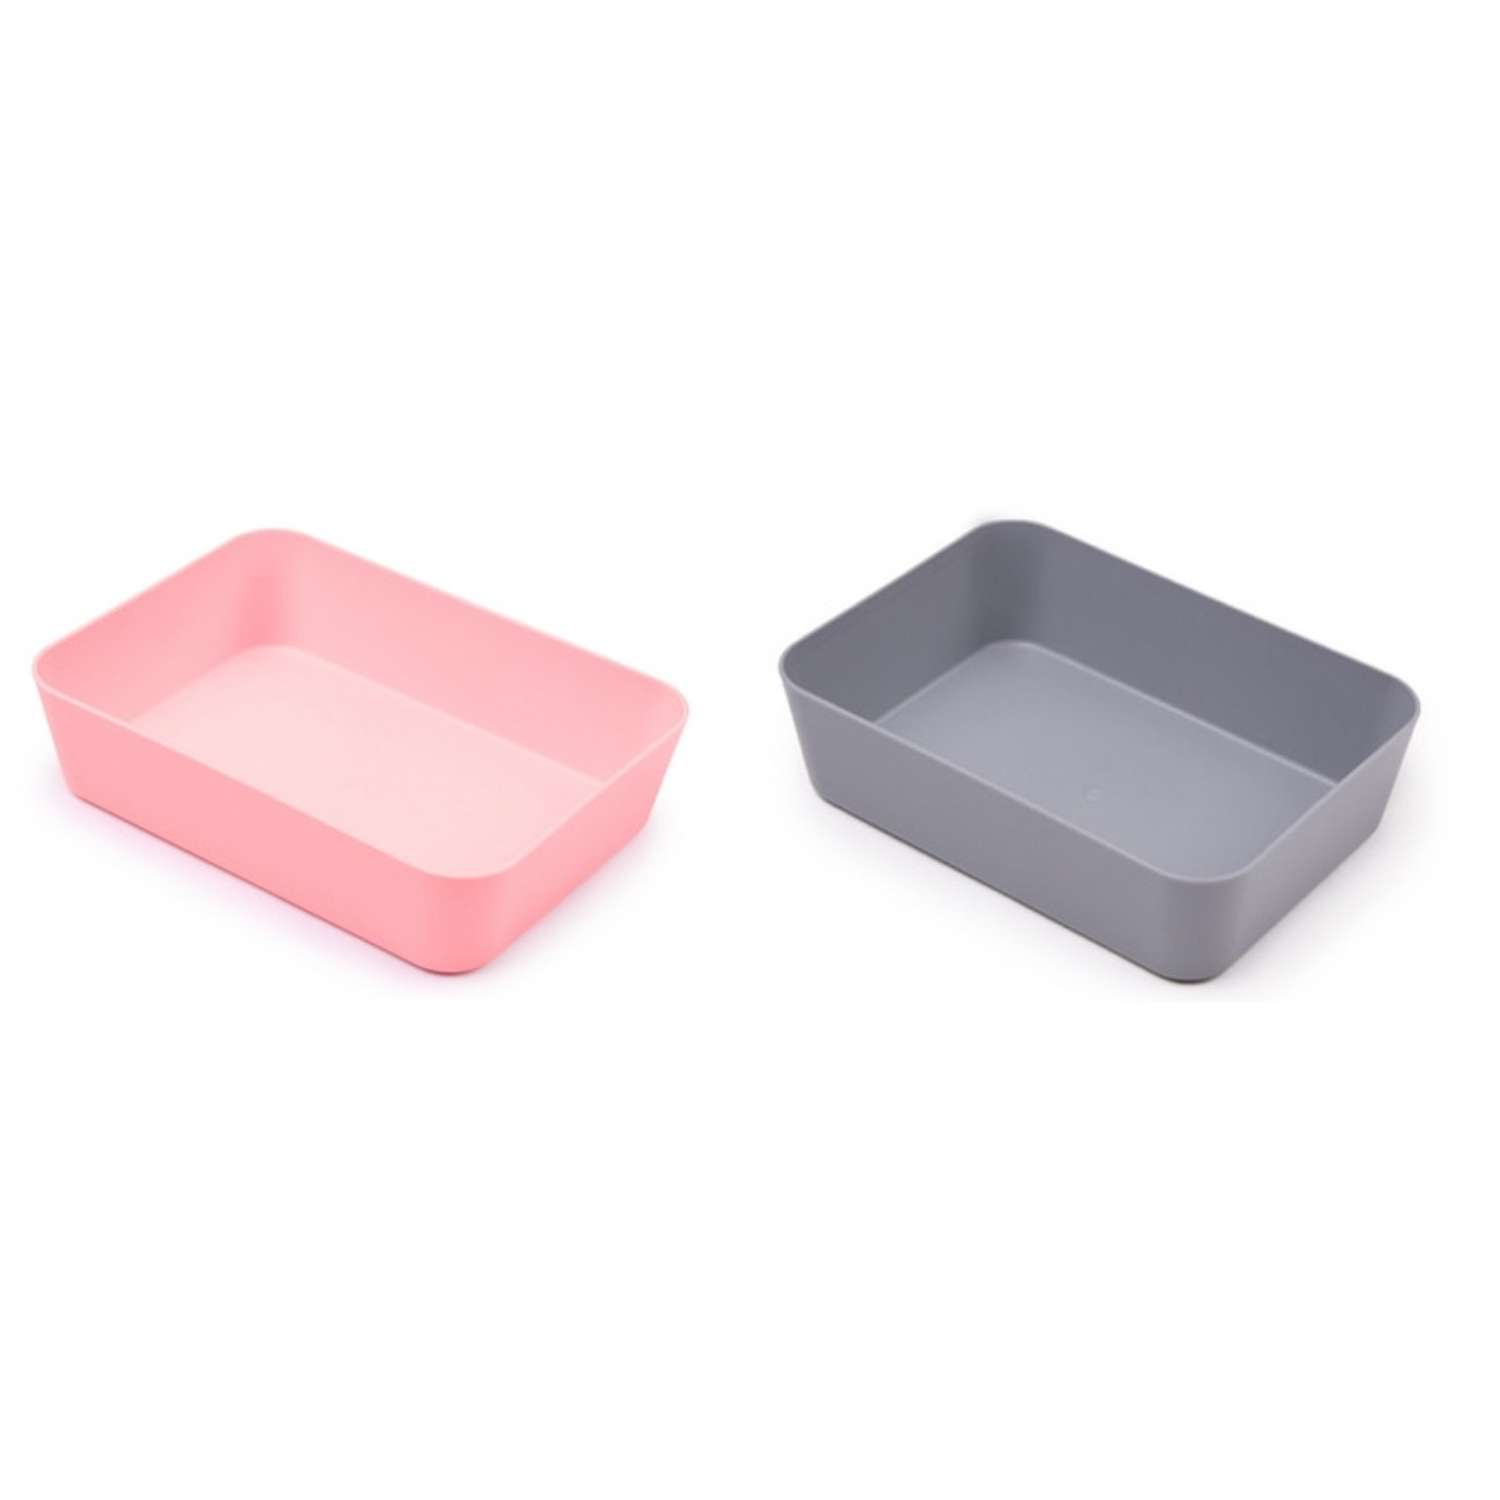 Лоток канцелярский Attache для канцелярских мелочей Selection розовый и серый 3 упаковки по 2 штуки - фото 1